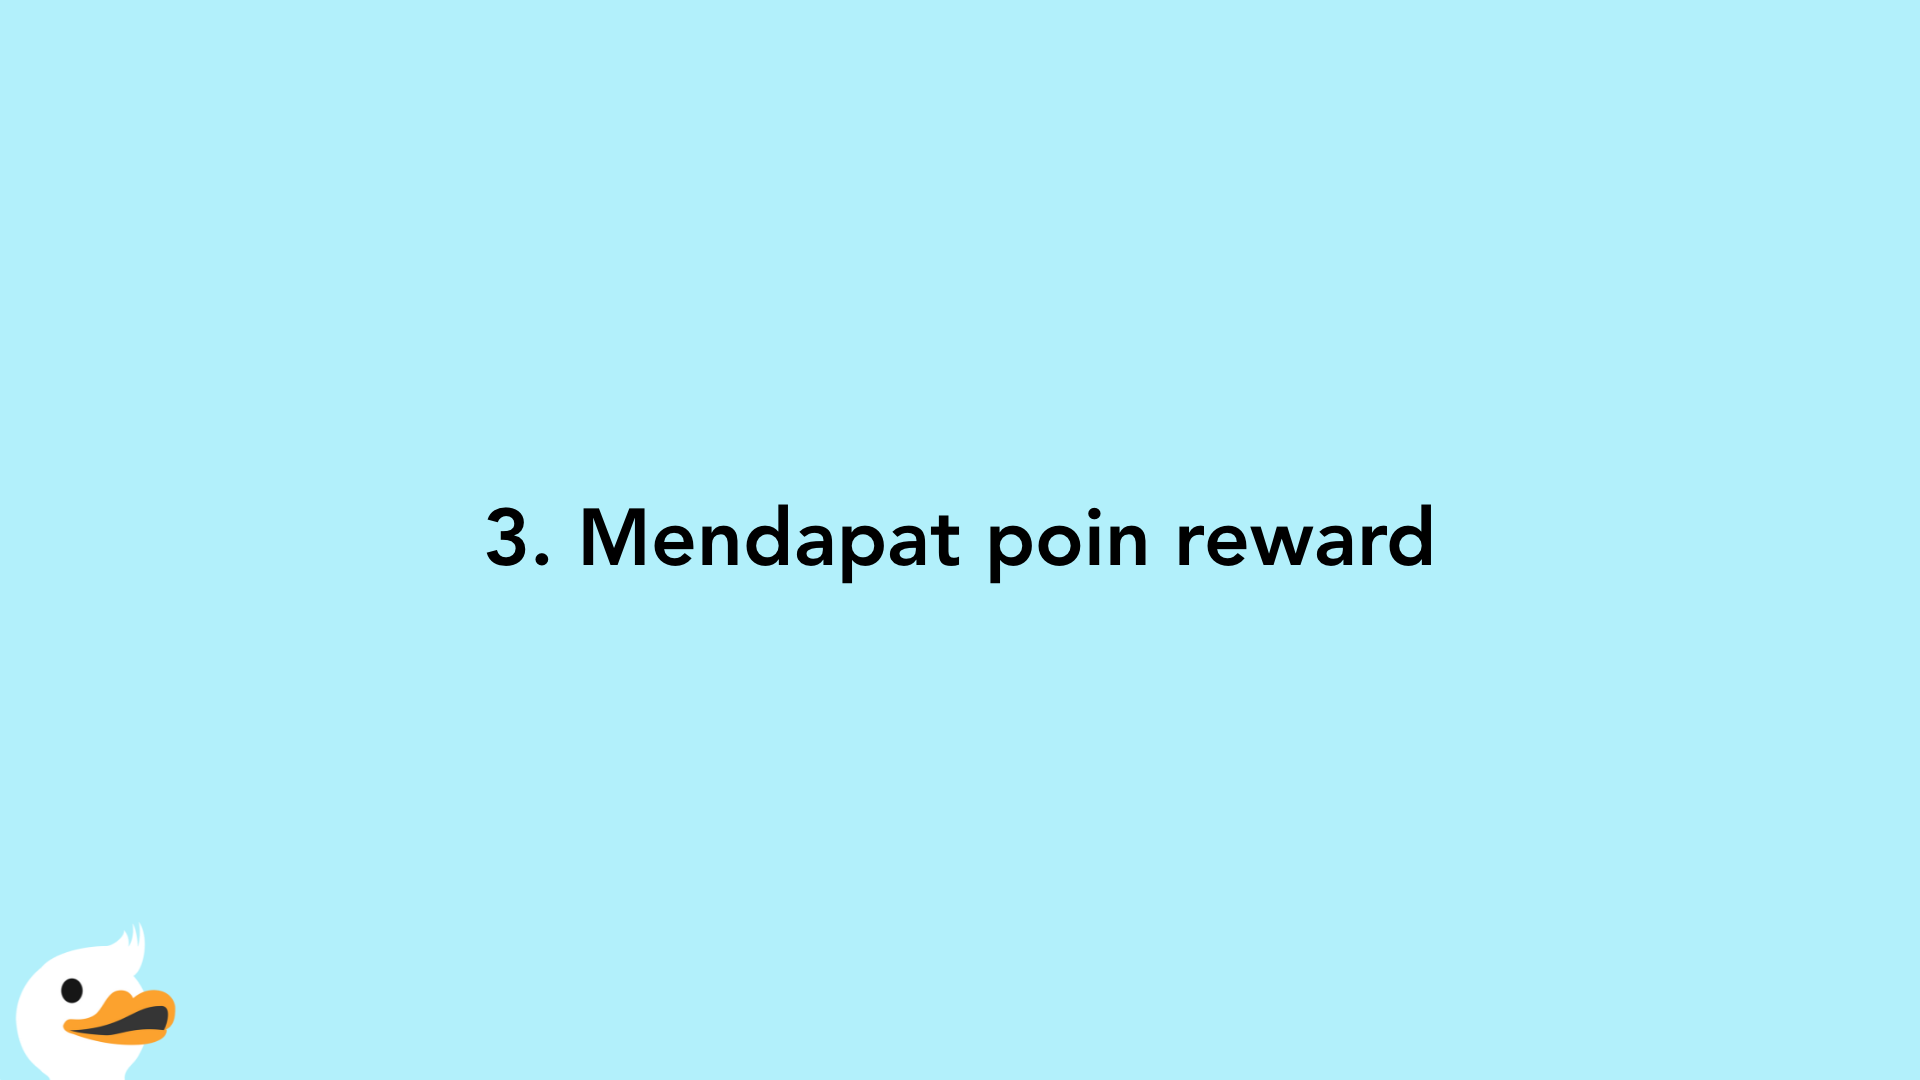 3. Mendapat poin reward